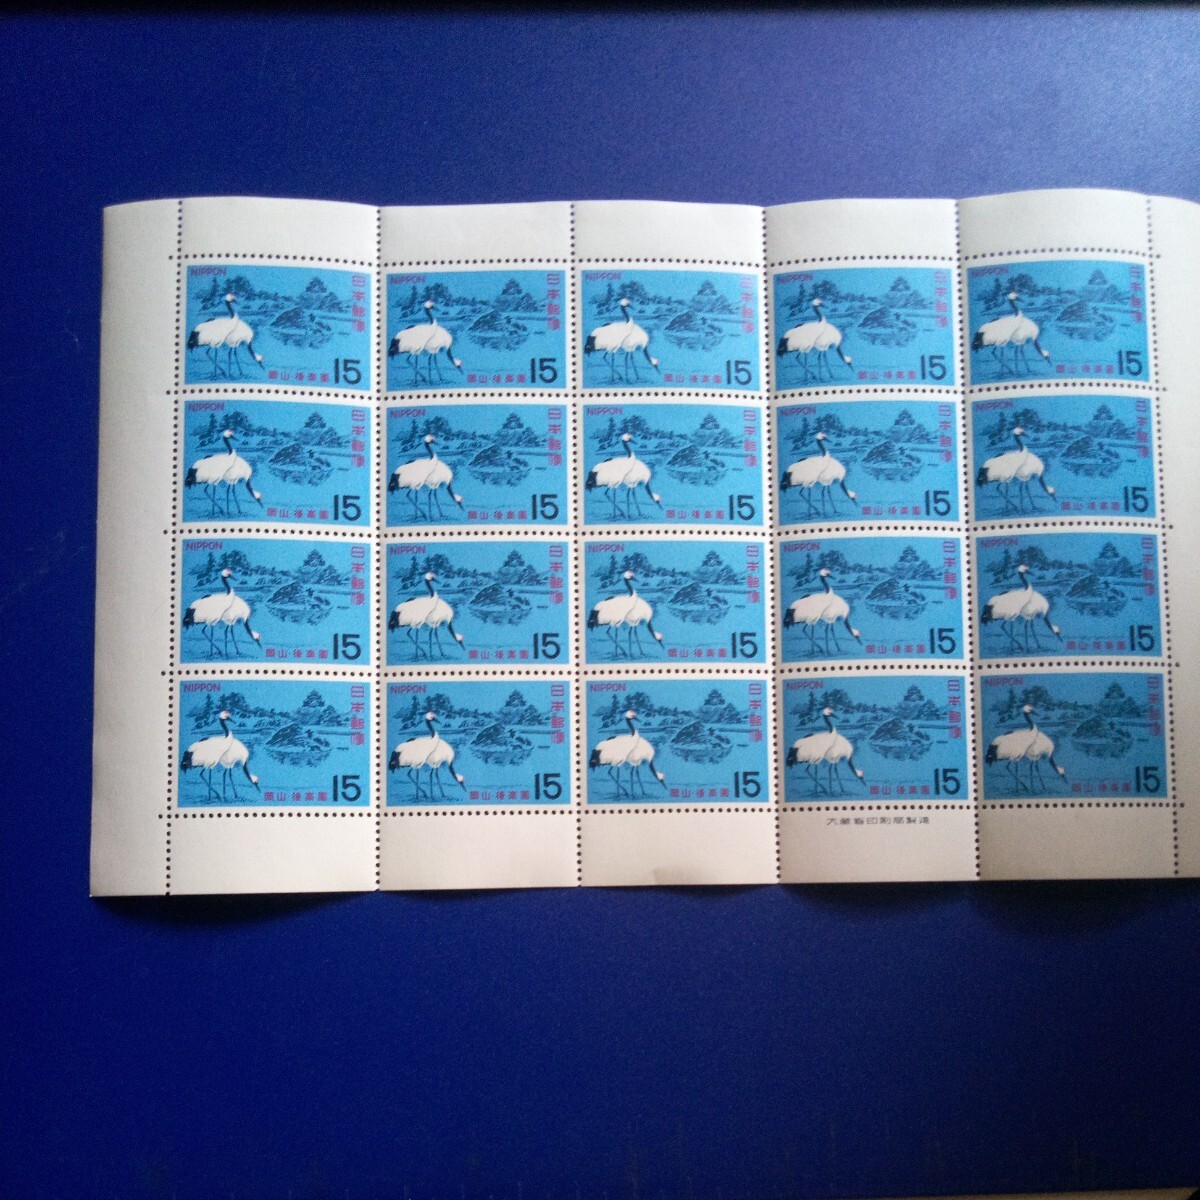 岡山後楽園記念切手1シート、1964オリンピック記念切手1シートの画像2